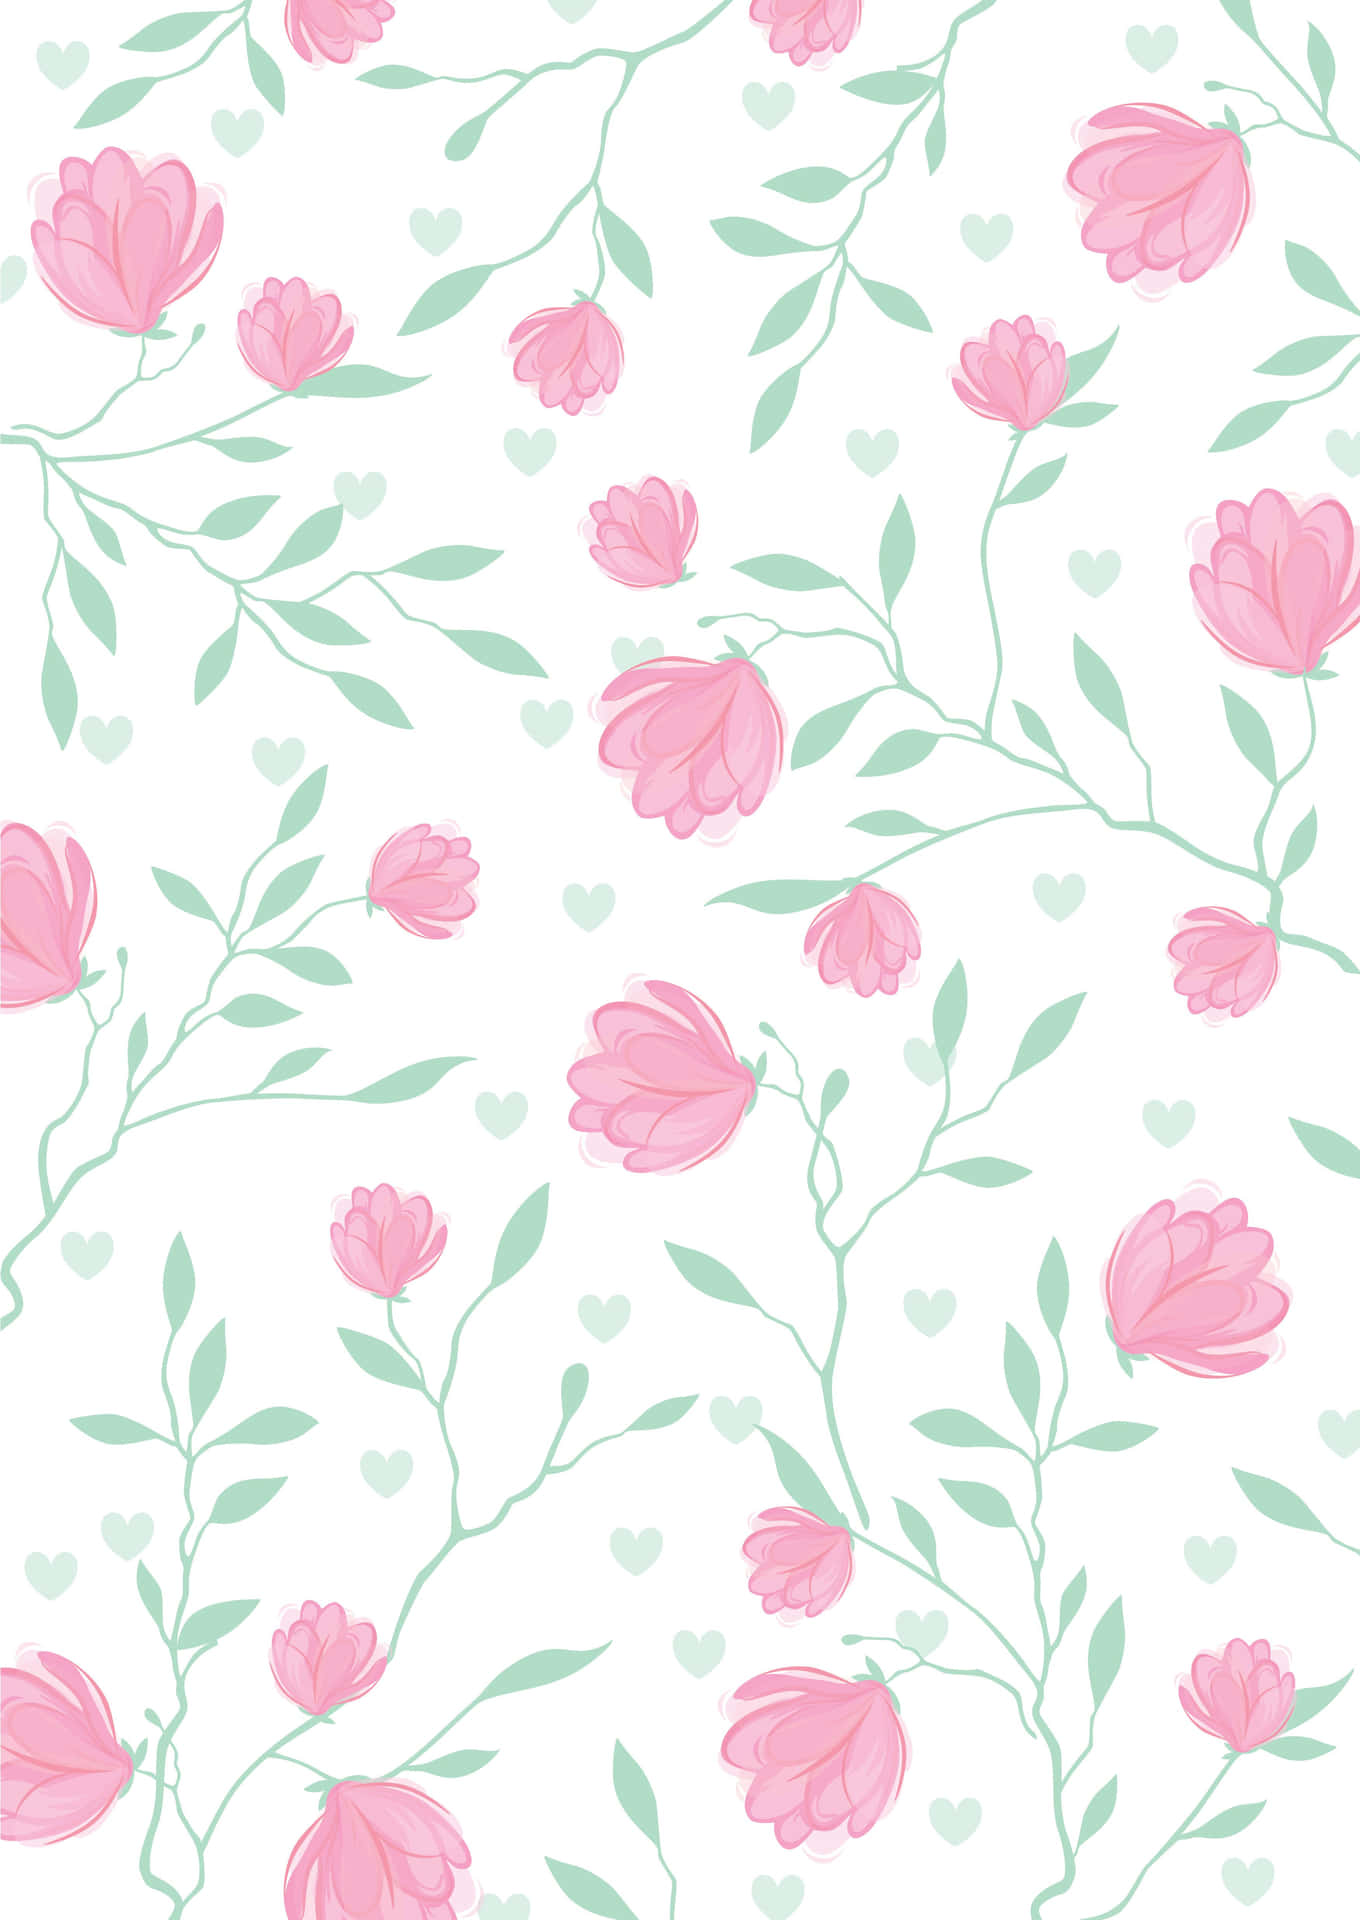 Blooming Floral Print Wallpaper Wallpaper